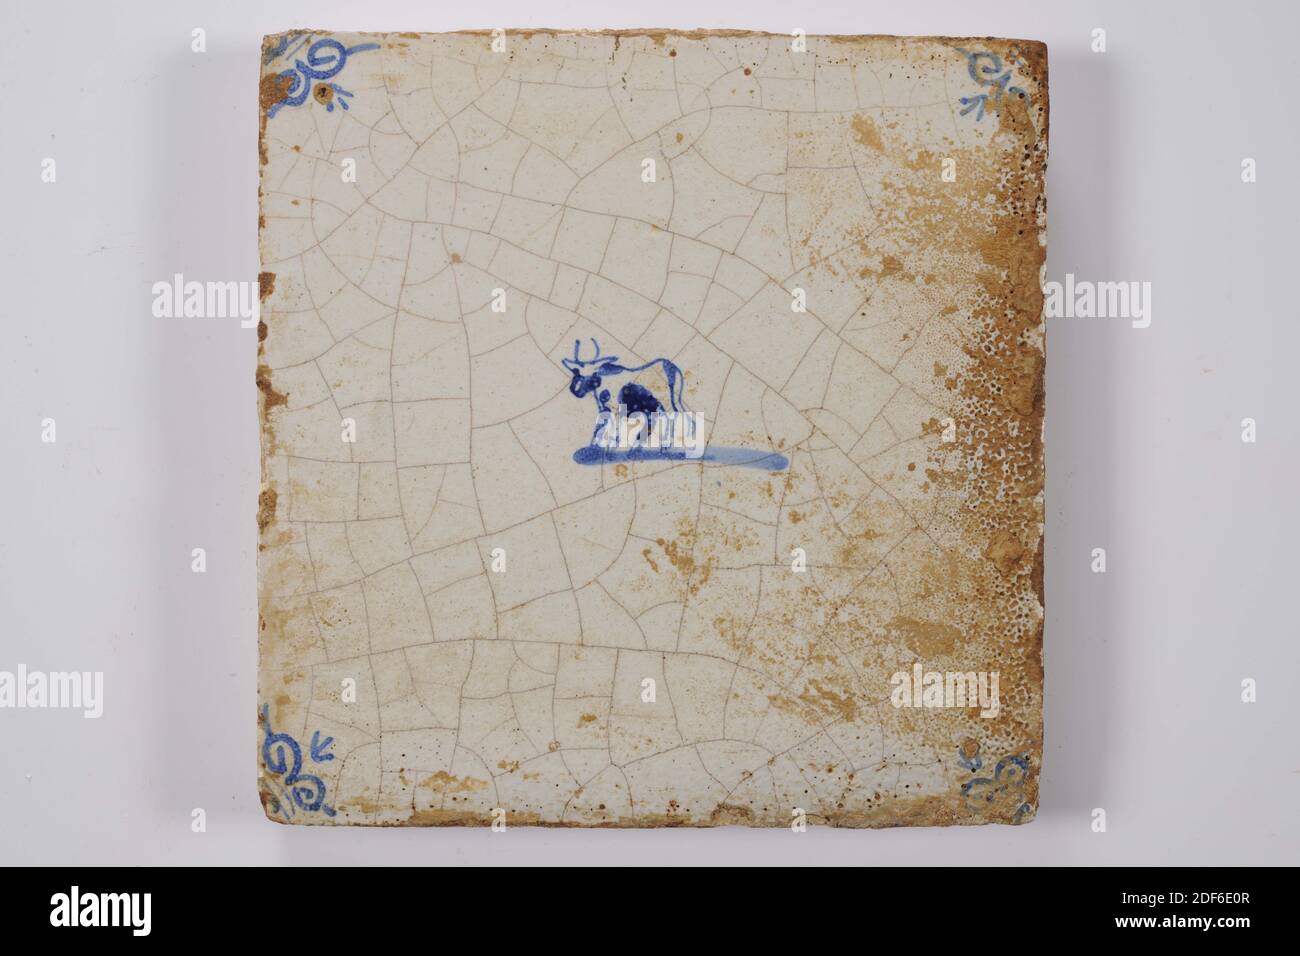 Carreau mural, Anonyme, entre 1640-1700, glaçure d'étain, faïence, général : 13.2 x 13.2 x 1,1cm (132 x 132 x 11mm), vache, carreau mural en faïence recouvert de glaçure d'étain et peint en bleu. La tuile représente une vache orientée vers la gauche au centre. L'animal a deux cornes, date 1995 Banque D'Images